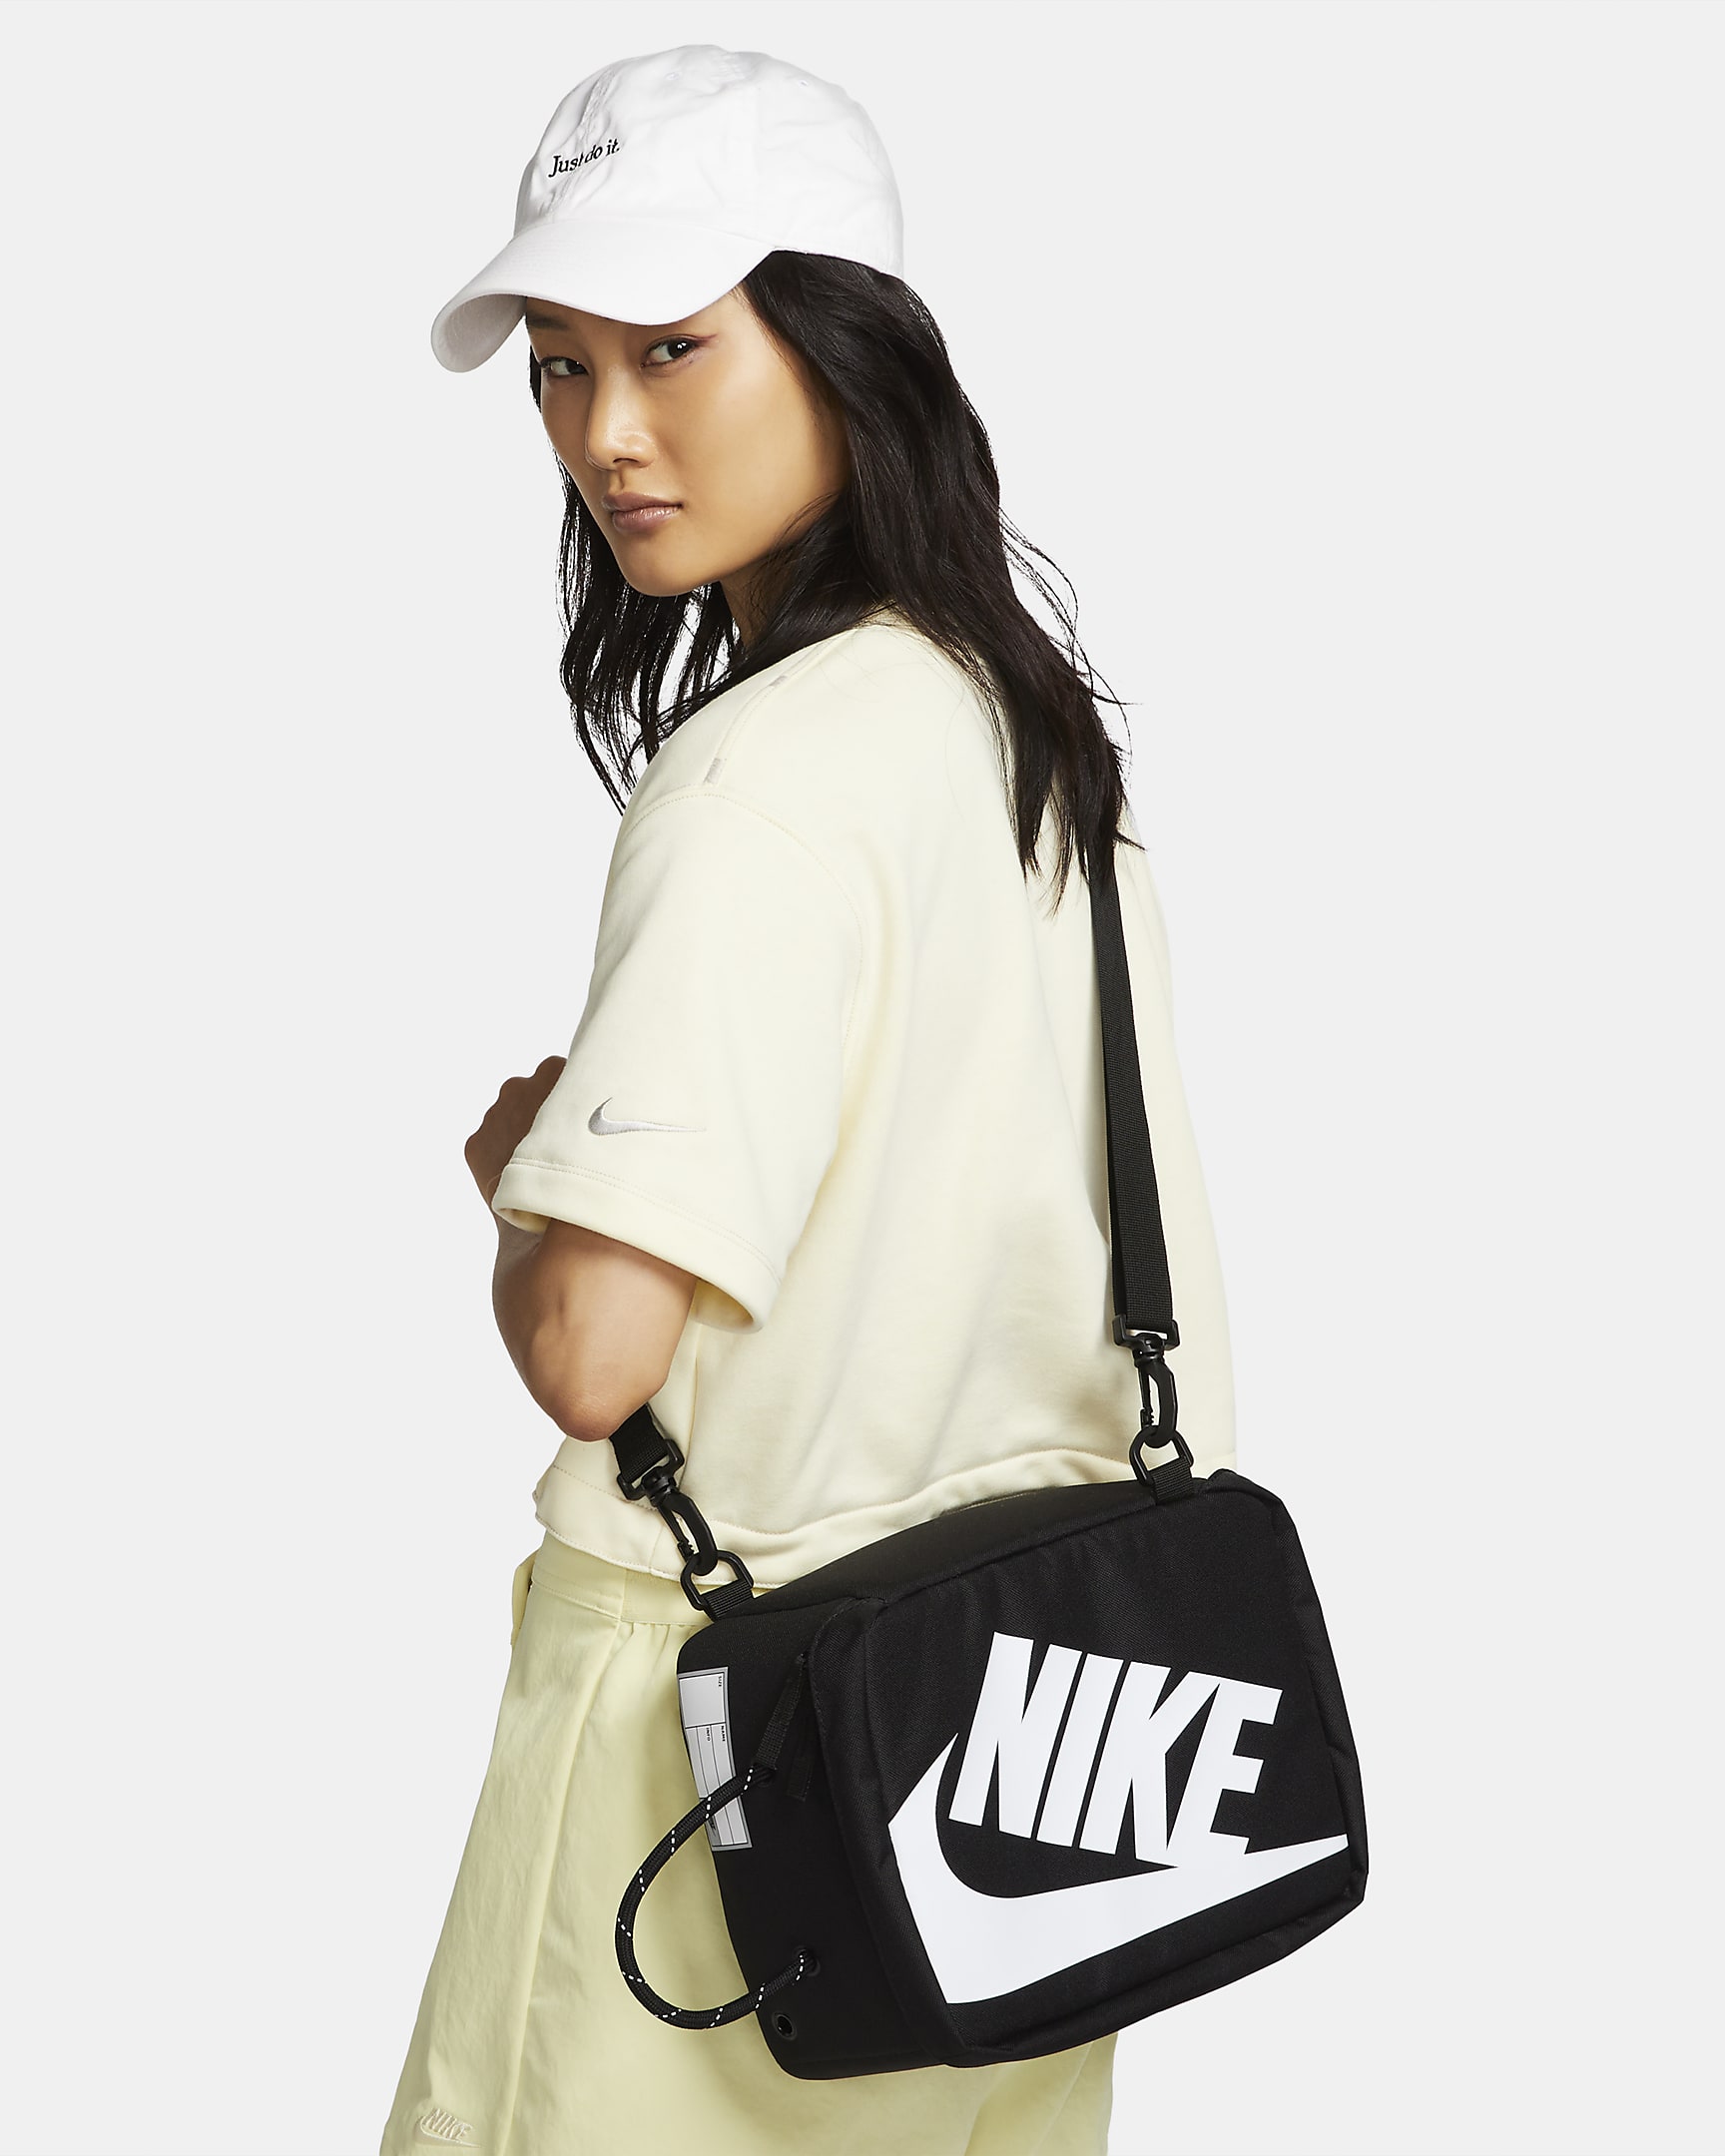 Nike Shoe Box Bag (Small, 8L) - Black/Black/White